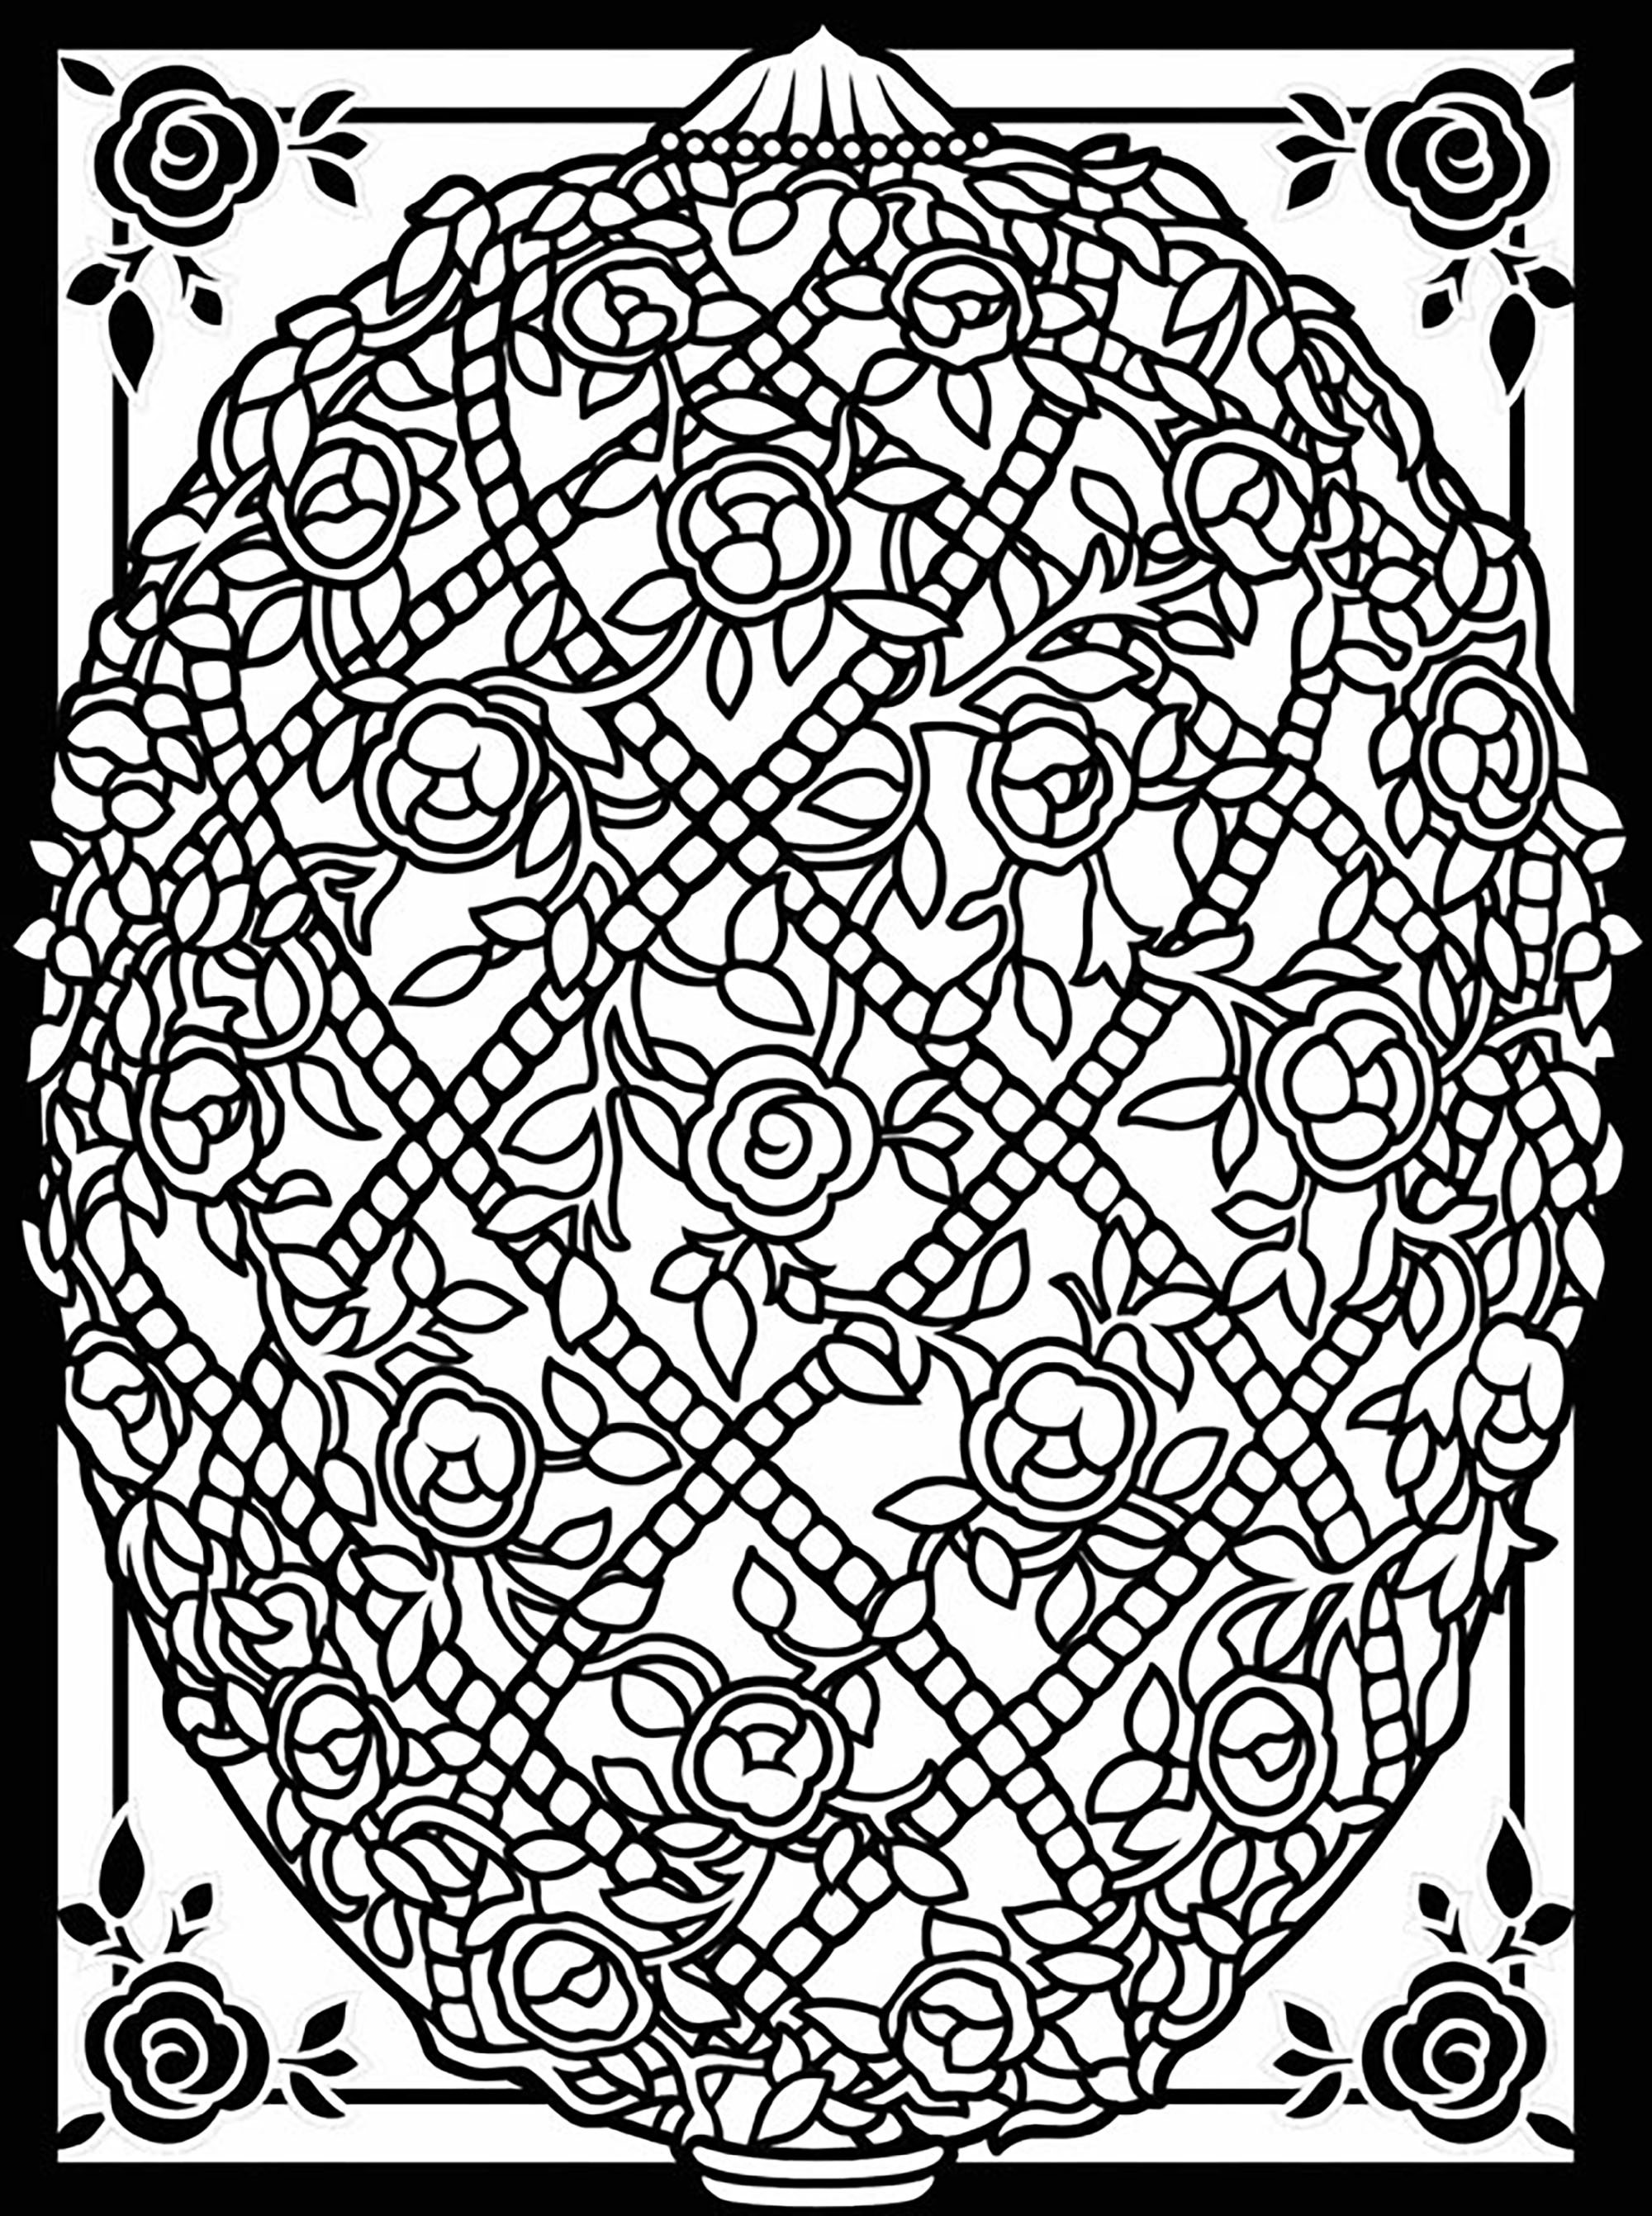 Oeuf de Pâques avec jolis motifs fleuris, Artiste : Dover Publications   Source : doverpublications